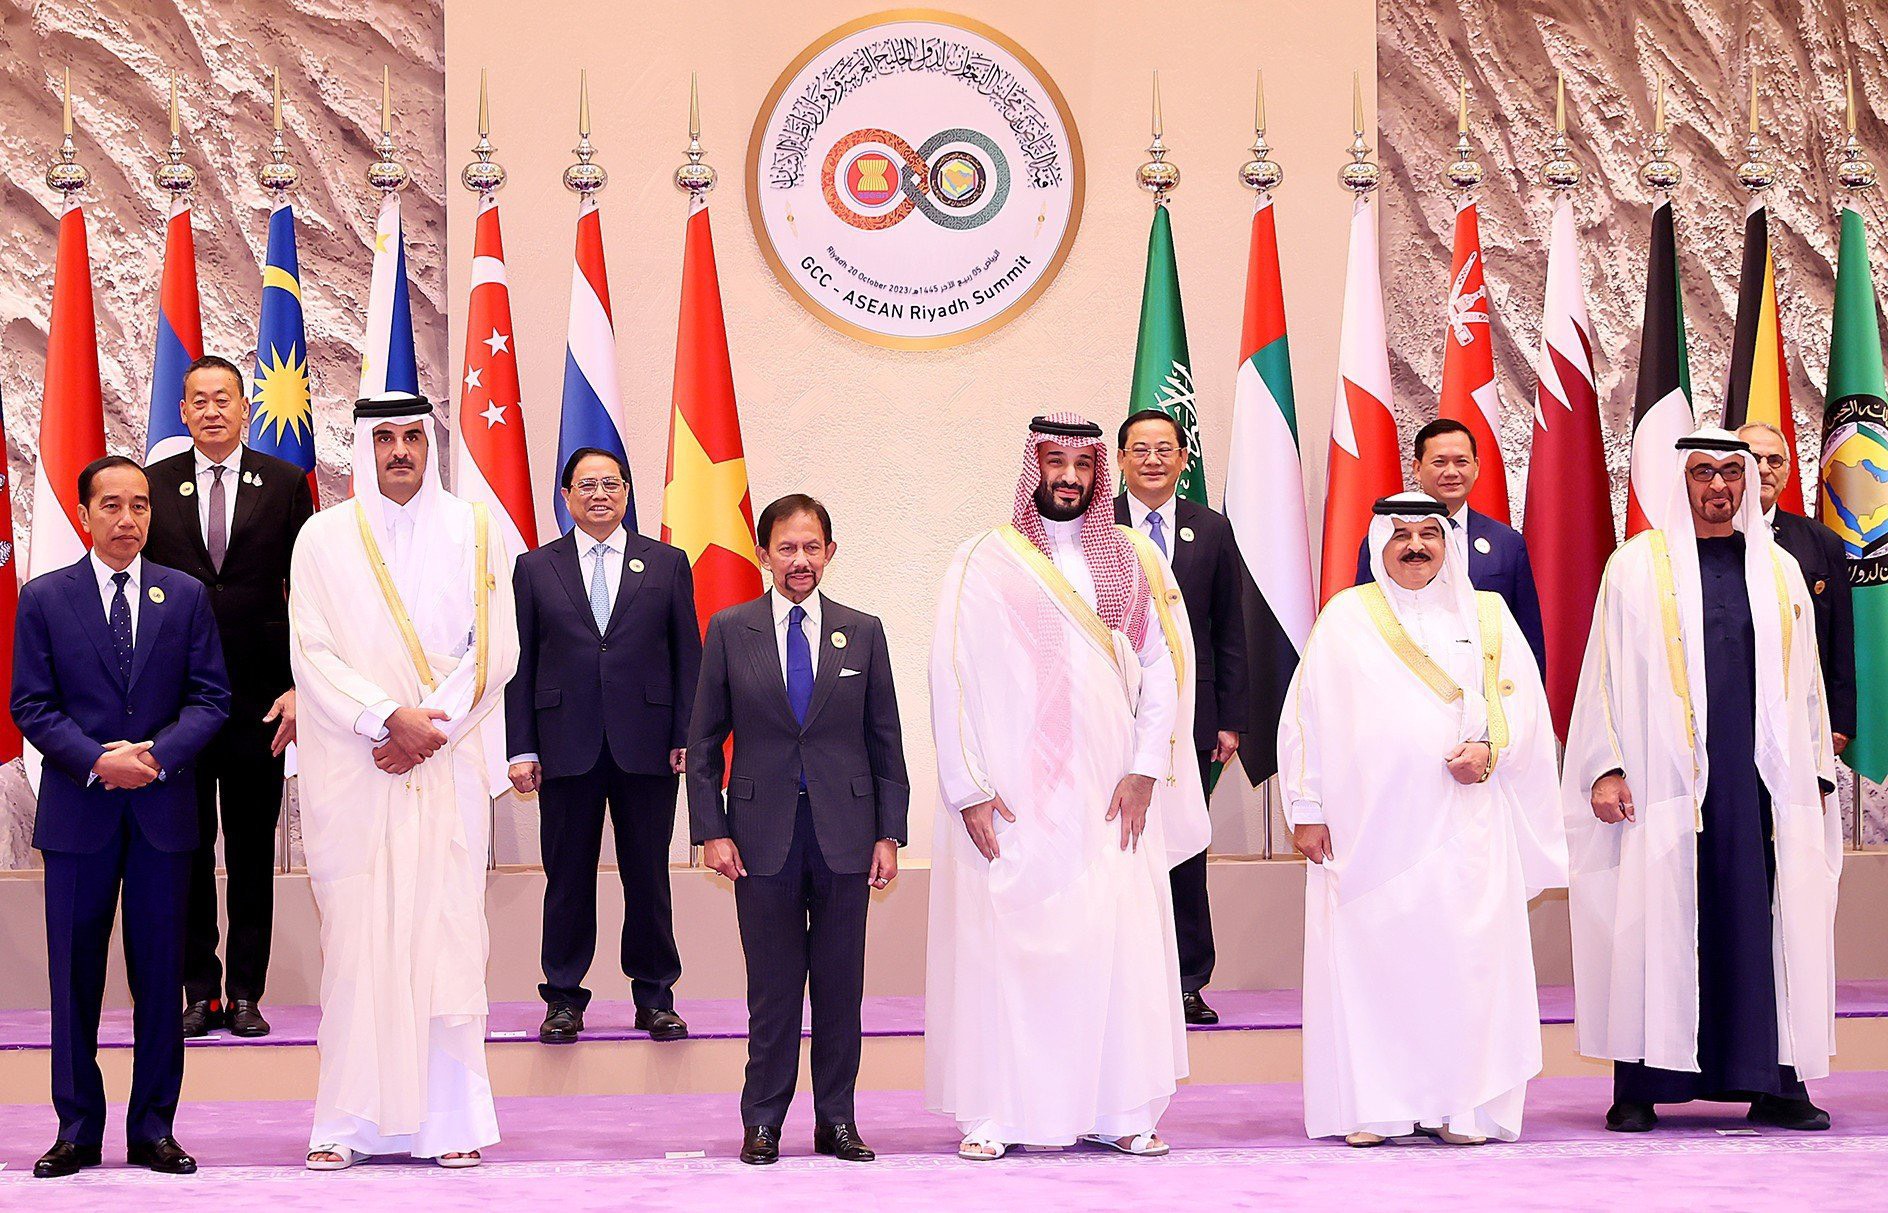 Thủ tướng, Hoàng Thái tử Saudi Arabia Mohammed bin Salman đón Thủ tướng Phạm Minh Chính và các trưởng đoàn dự Hội nghị - Ảnh: VGP